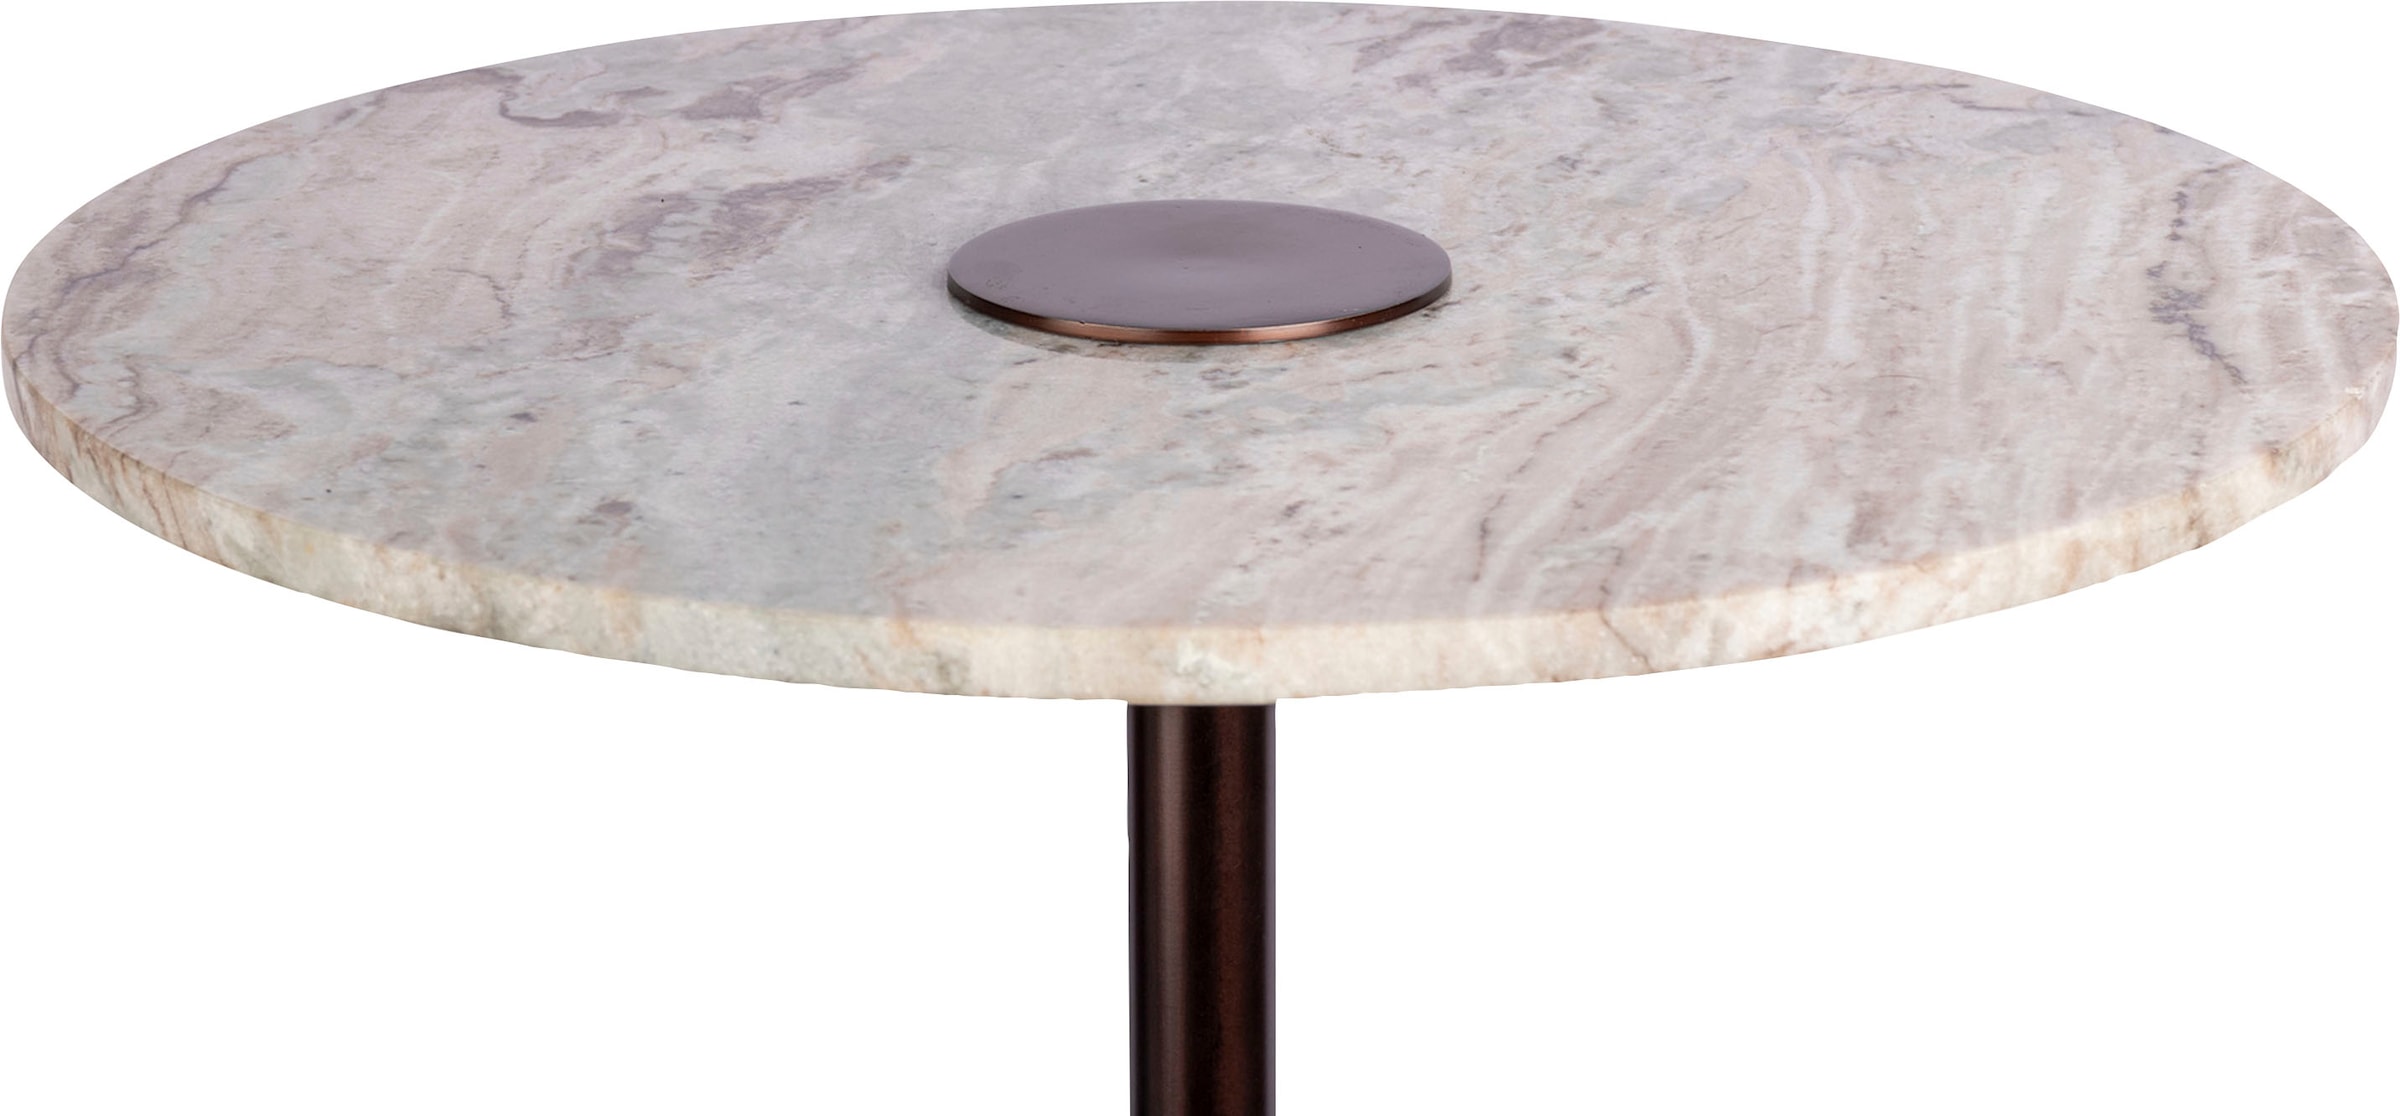 Kayoom Beistelltisch »Harriet«, Tischplatte aus Marmor, stabiles Gestell aus Eisen